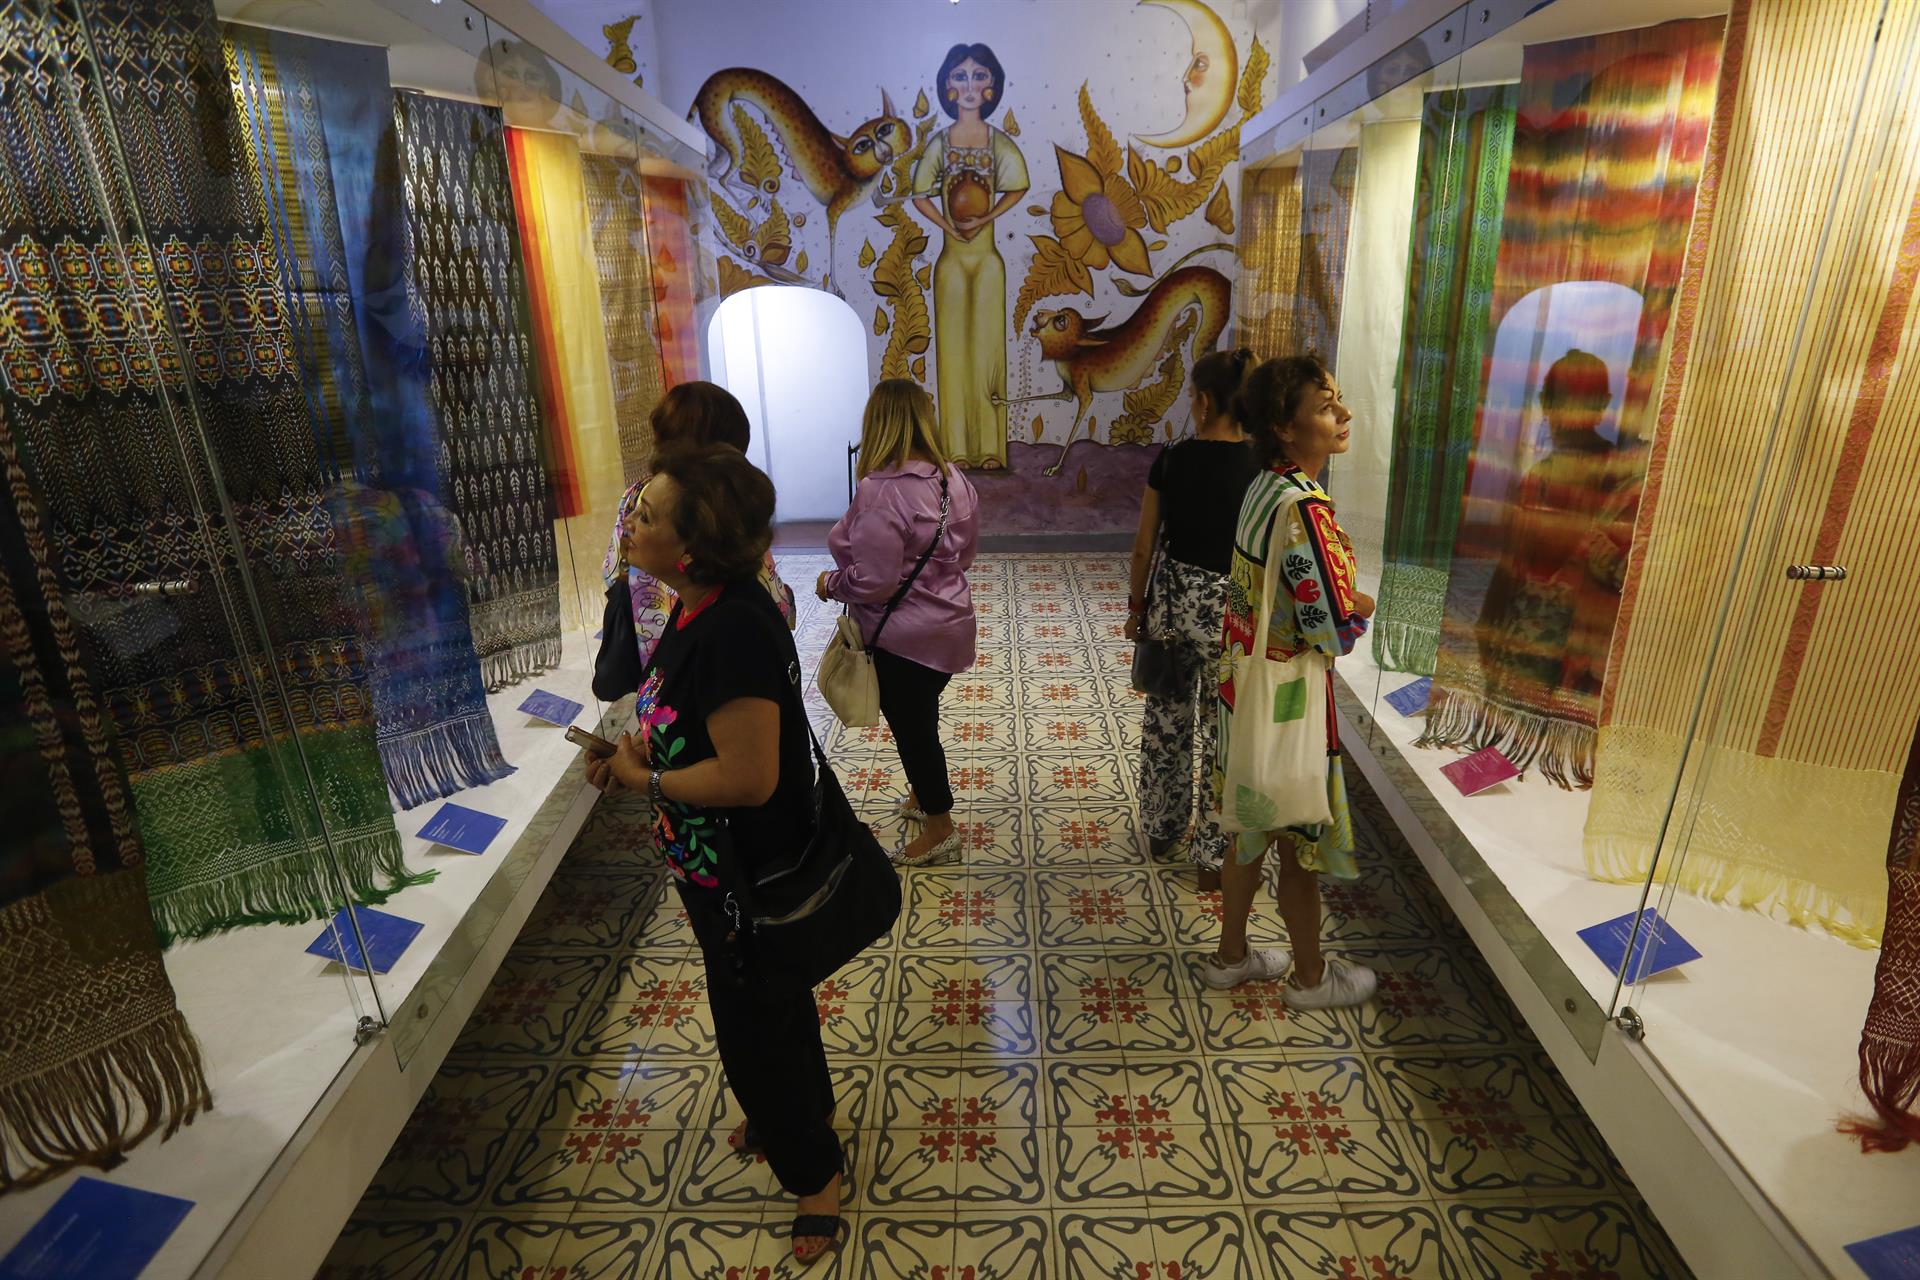 Personas observan la exhibición de rebozos dentro del Museo de Artes Populares, el 15 de septiembre de 2022 en la ciudad Guadalajara, en Jalisco (México). EFE/ Francisco Guasco
